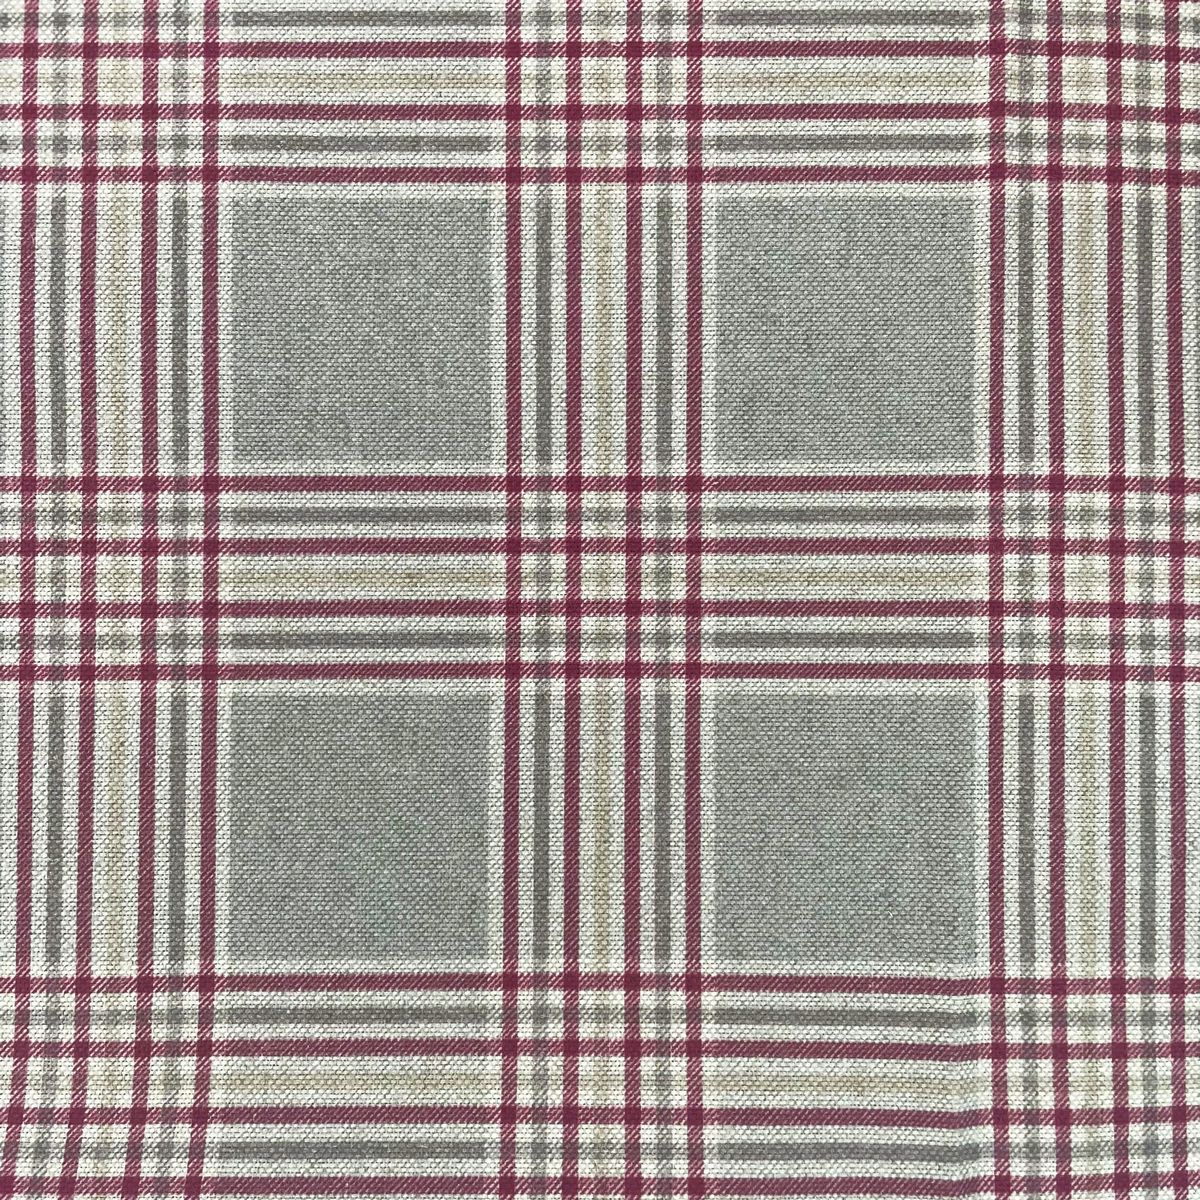 Lennox Poppy Fabric by Chatham Glyn